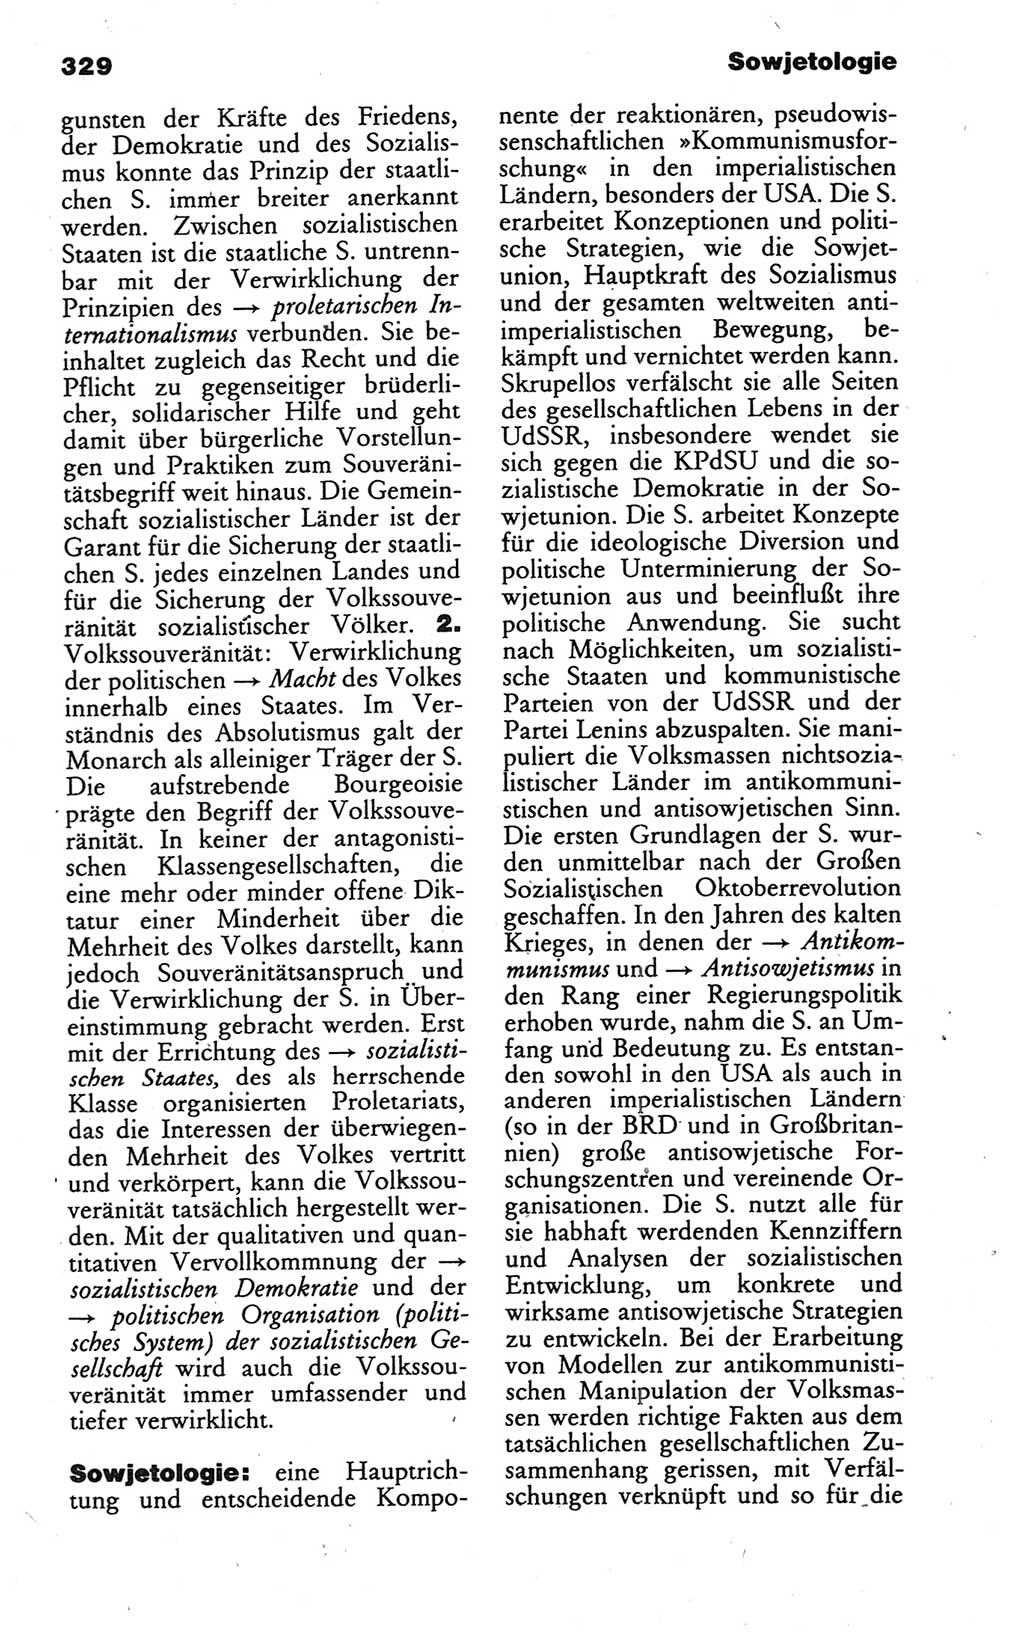 Wörterbuch des wissenschaftlichen Kommunismus [Deutsche Demokratische Republik (DDR)] 1986, Seite 329 (Wb. wiss. Komm. DDR 1986, S. 329)